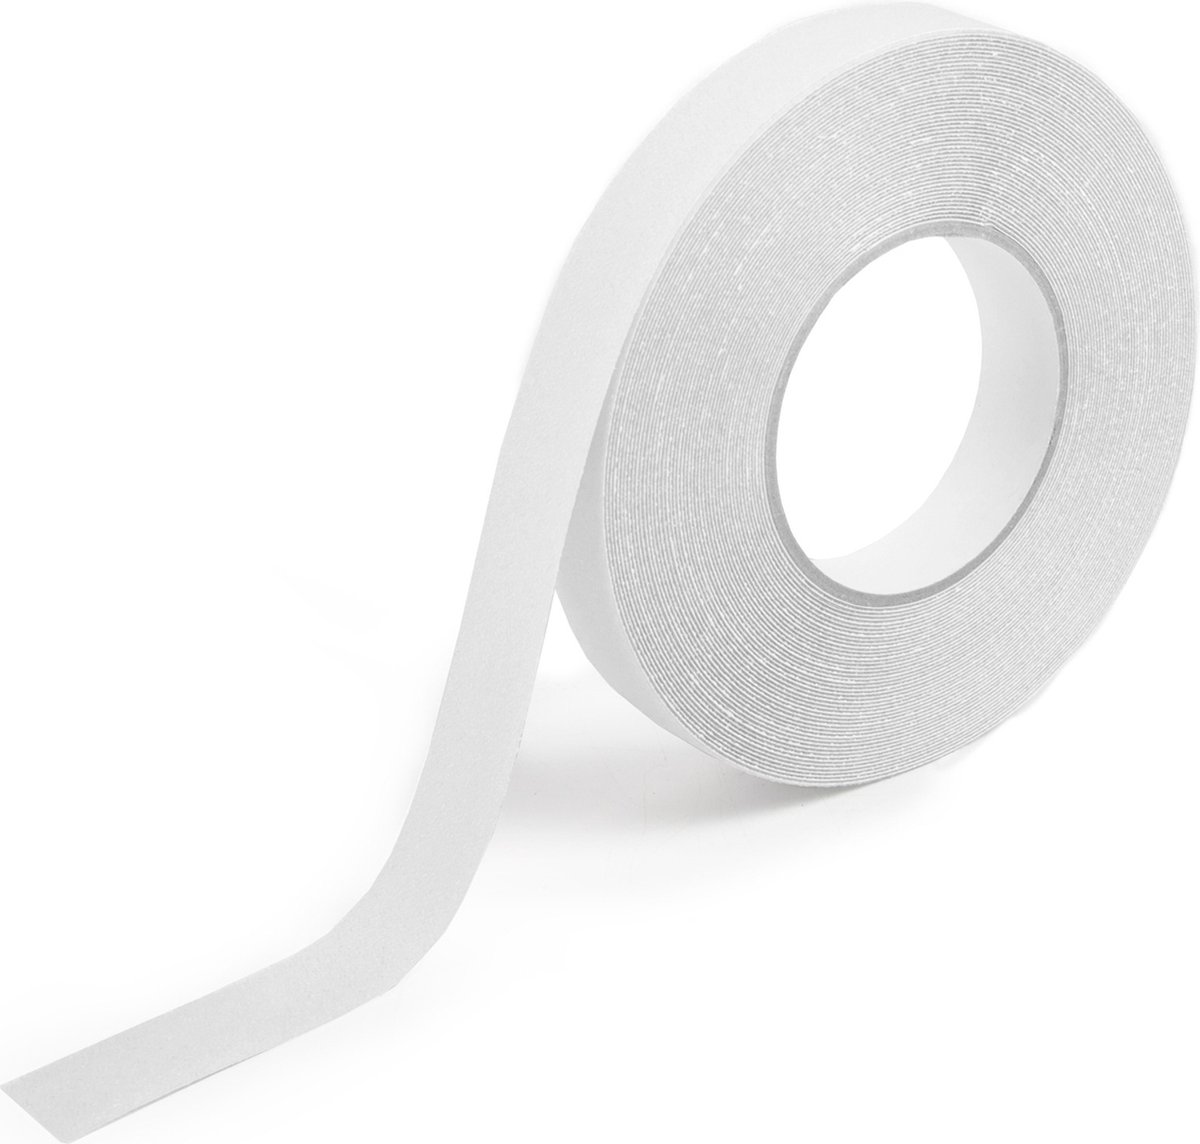 Antislip tape - Waterbestendig - Transparant - 25 mm breed - Rol 18,3 meter - Merkloos